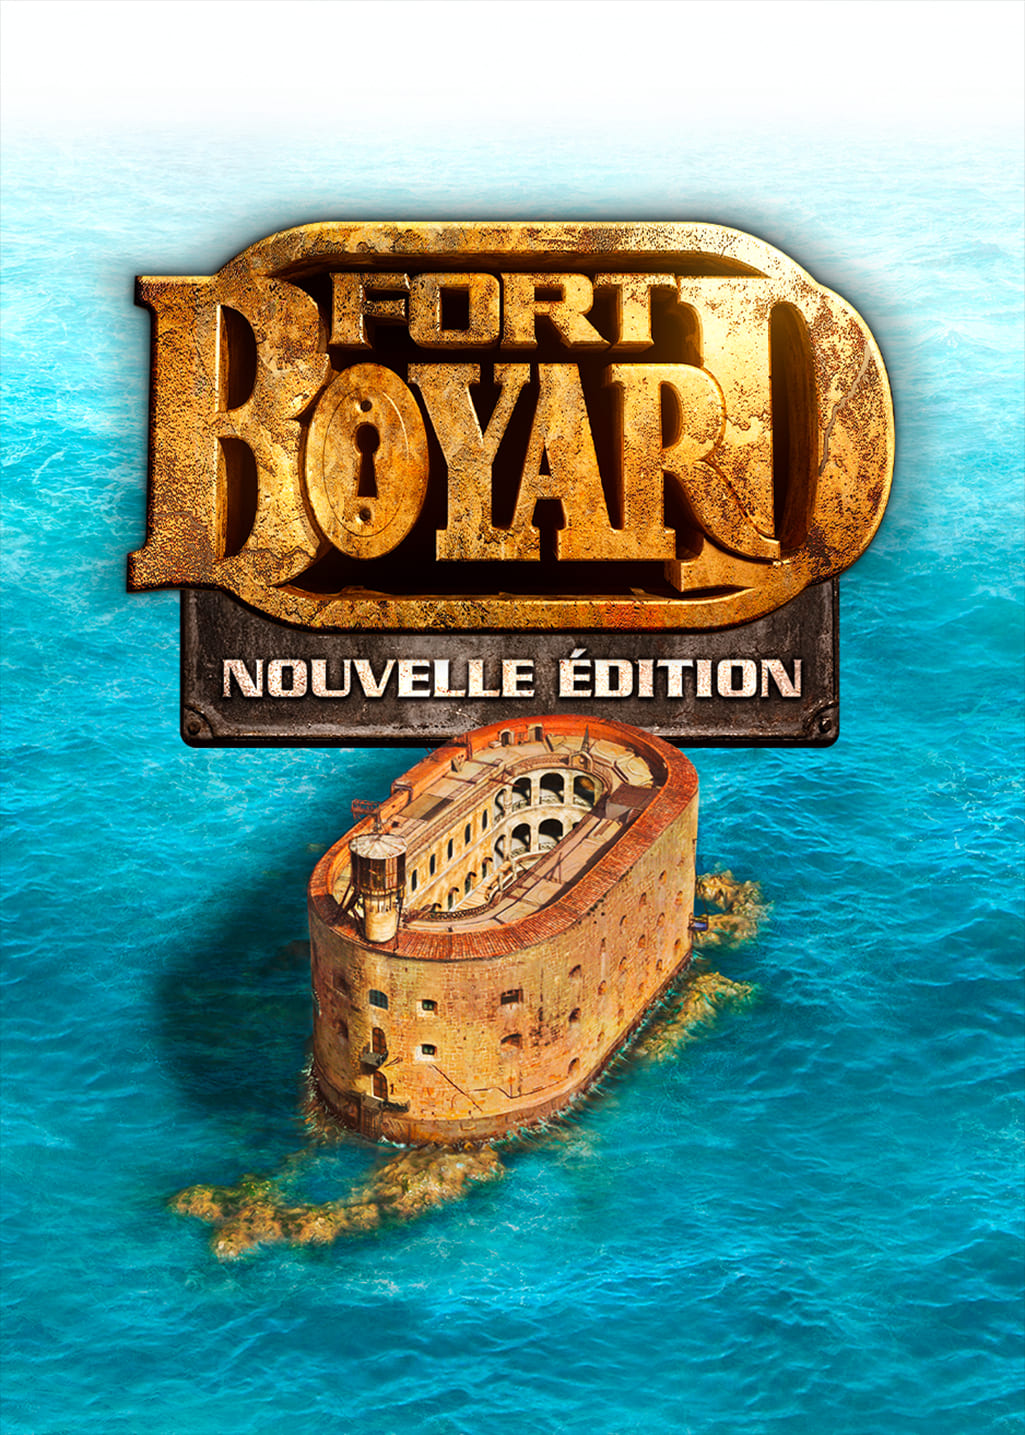 Fort Boyard - Nouvelle Edition